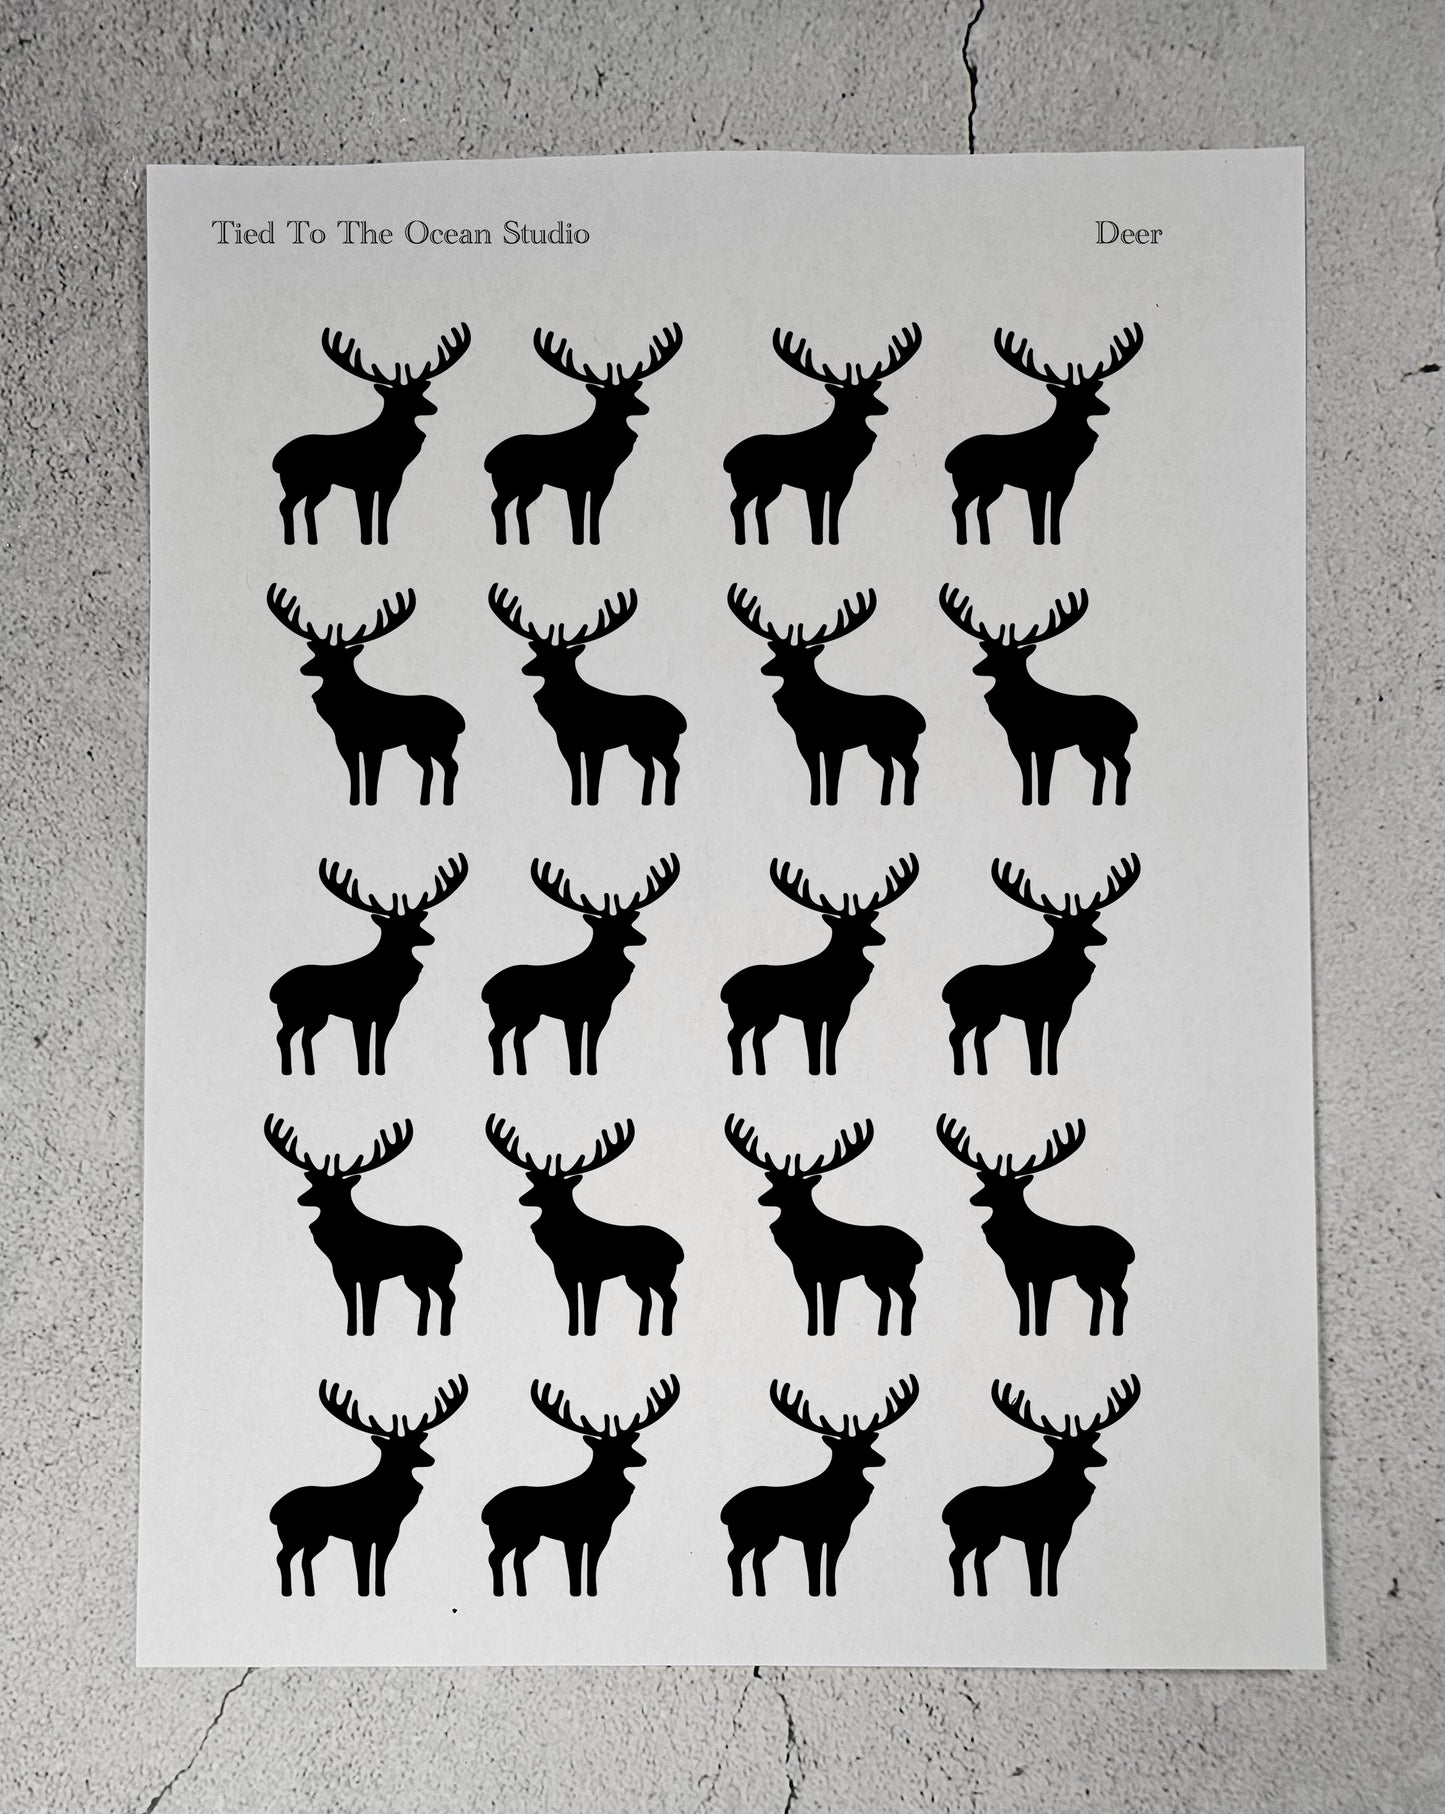 Deer 2.0 Resist Stickers